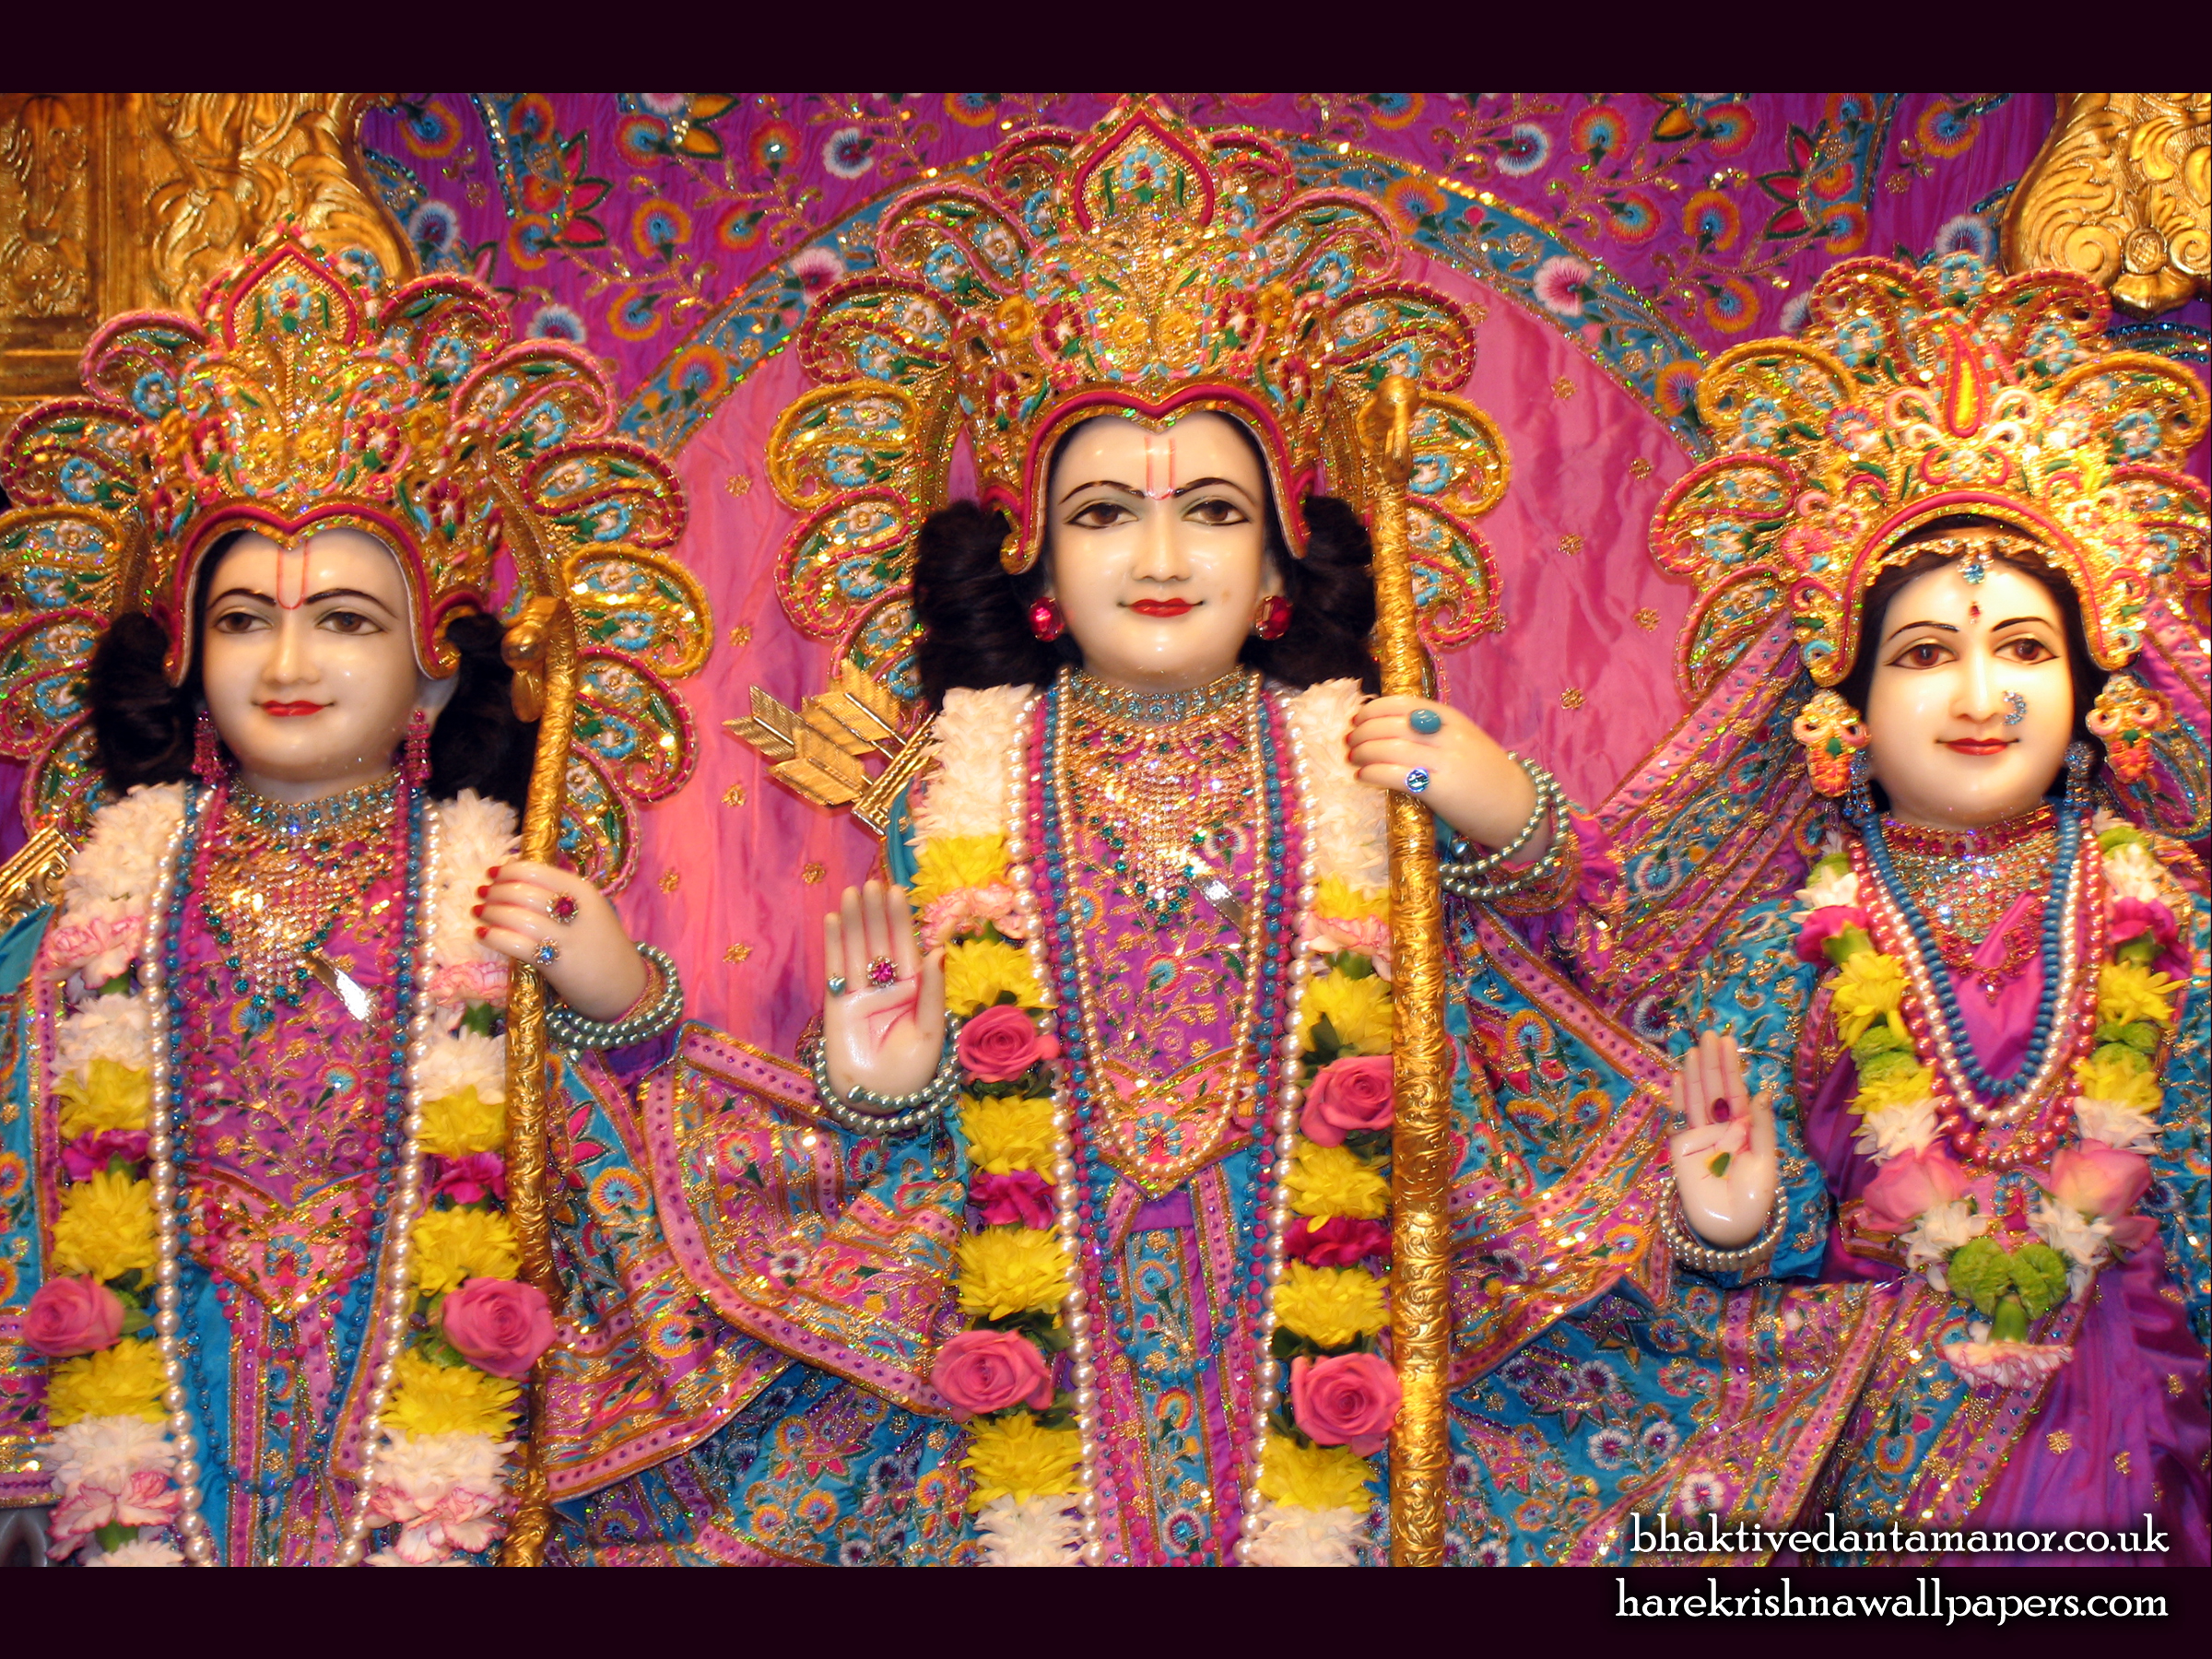 Sri Sri Sita Rama Laxman Close up Wallpaper (002) Size 2400x1800 Download